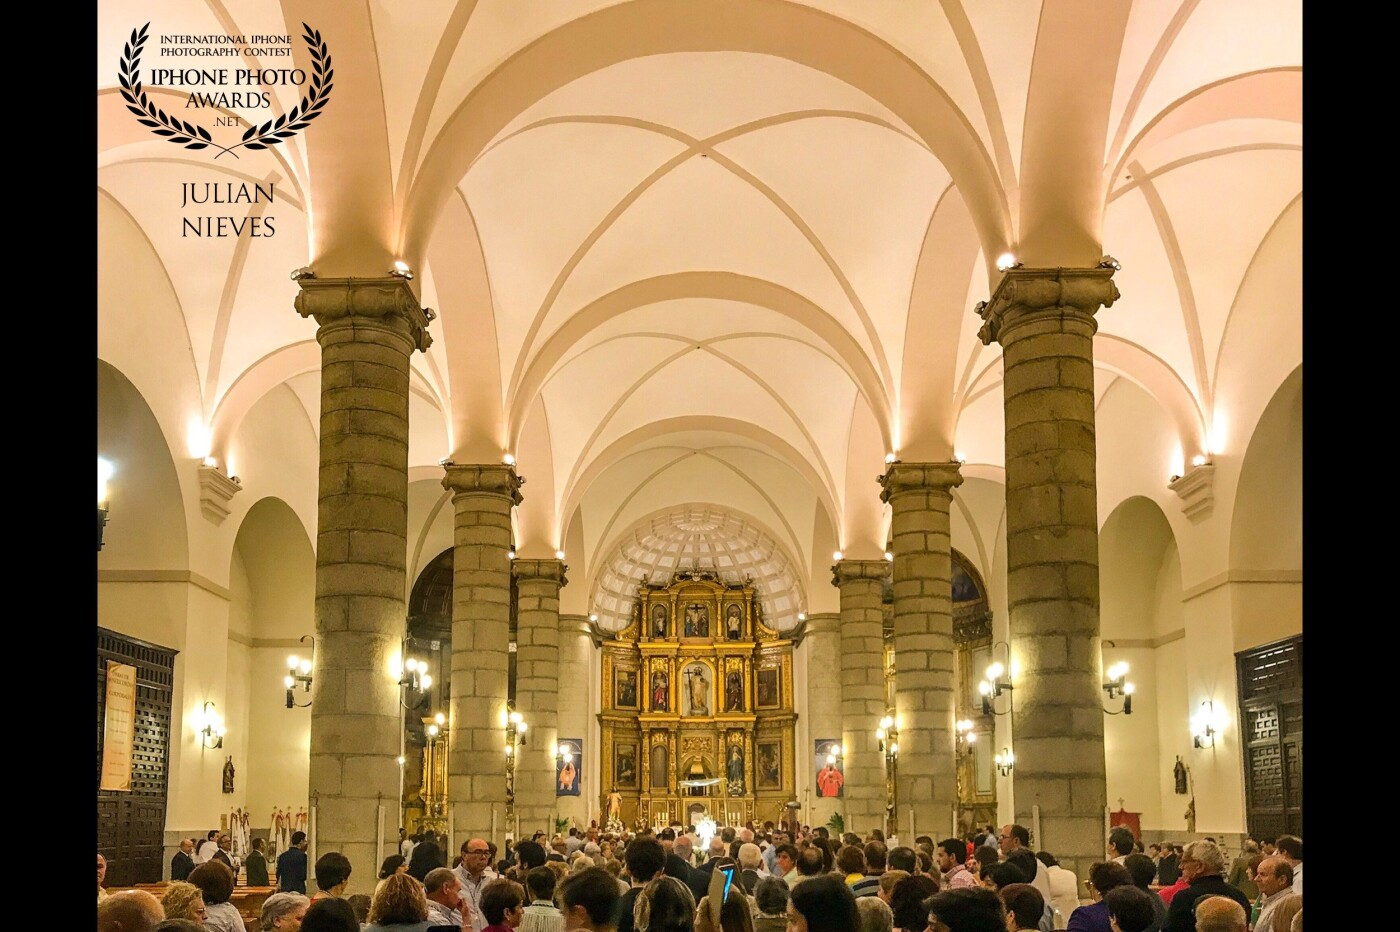 La iglesia de mi pueblo,  engalanada para acoger una de la mayores fiestas católicas, la festividad del Corpus Christi y ensalzar el Santísimo Sacramento en Madridejos - Toledo.